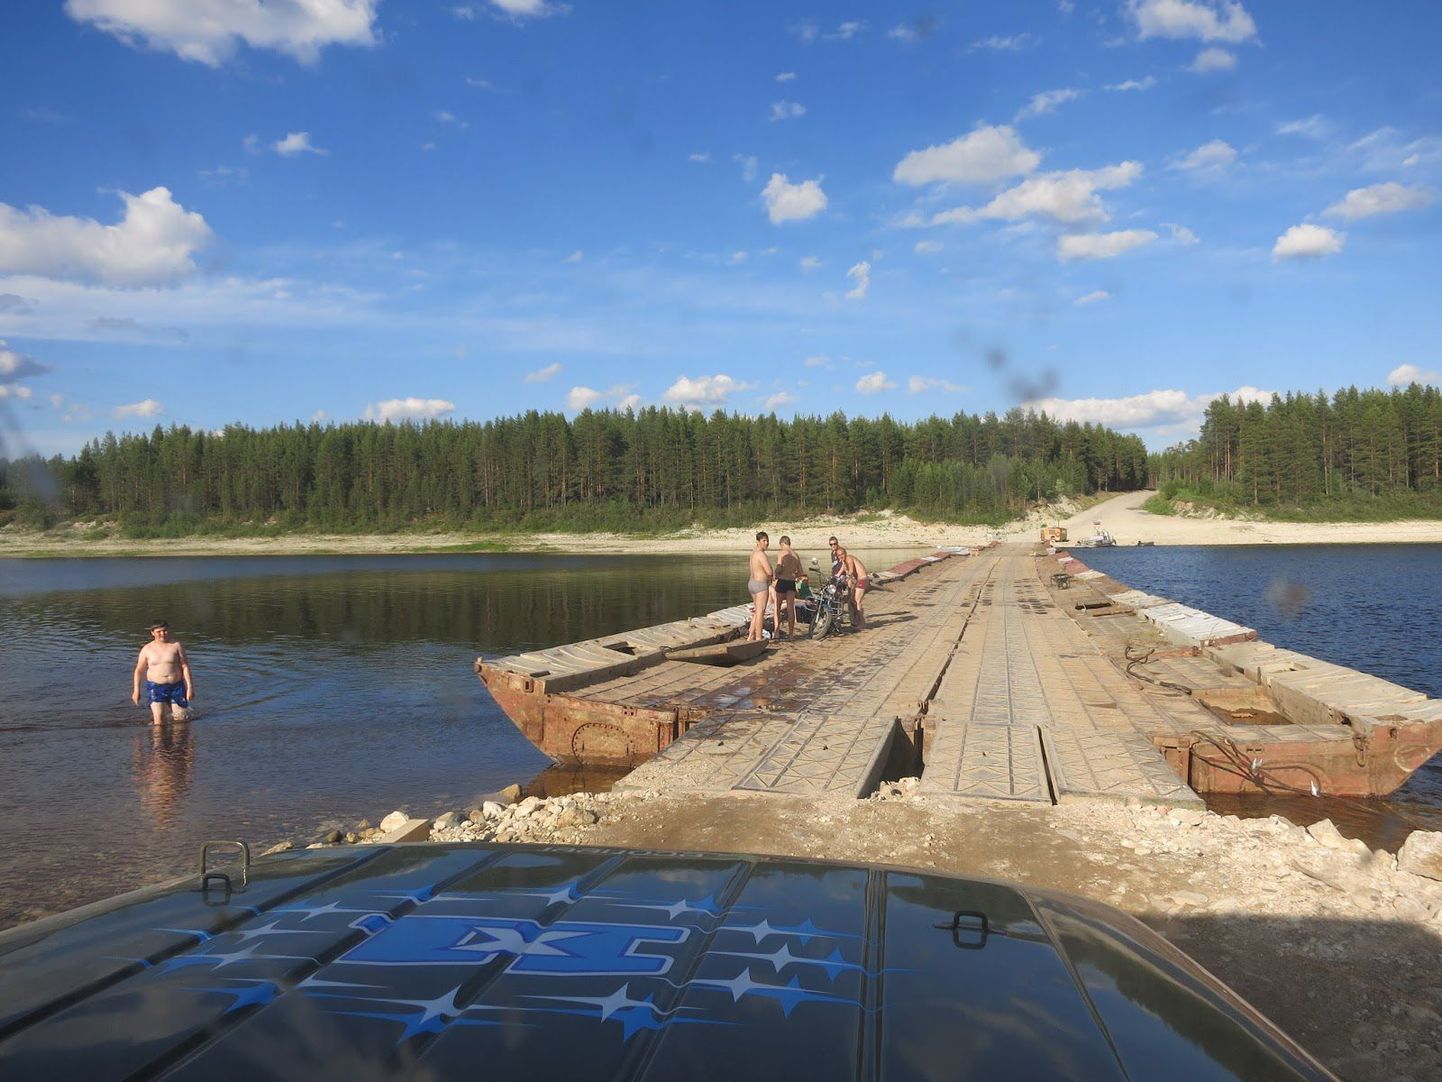 Понтонный мост в Архангельской области. Если пересечение одного моста было бесплатным, то за переезд по другому пришлось местным дать денег на два пива.